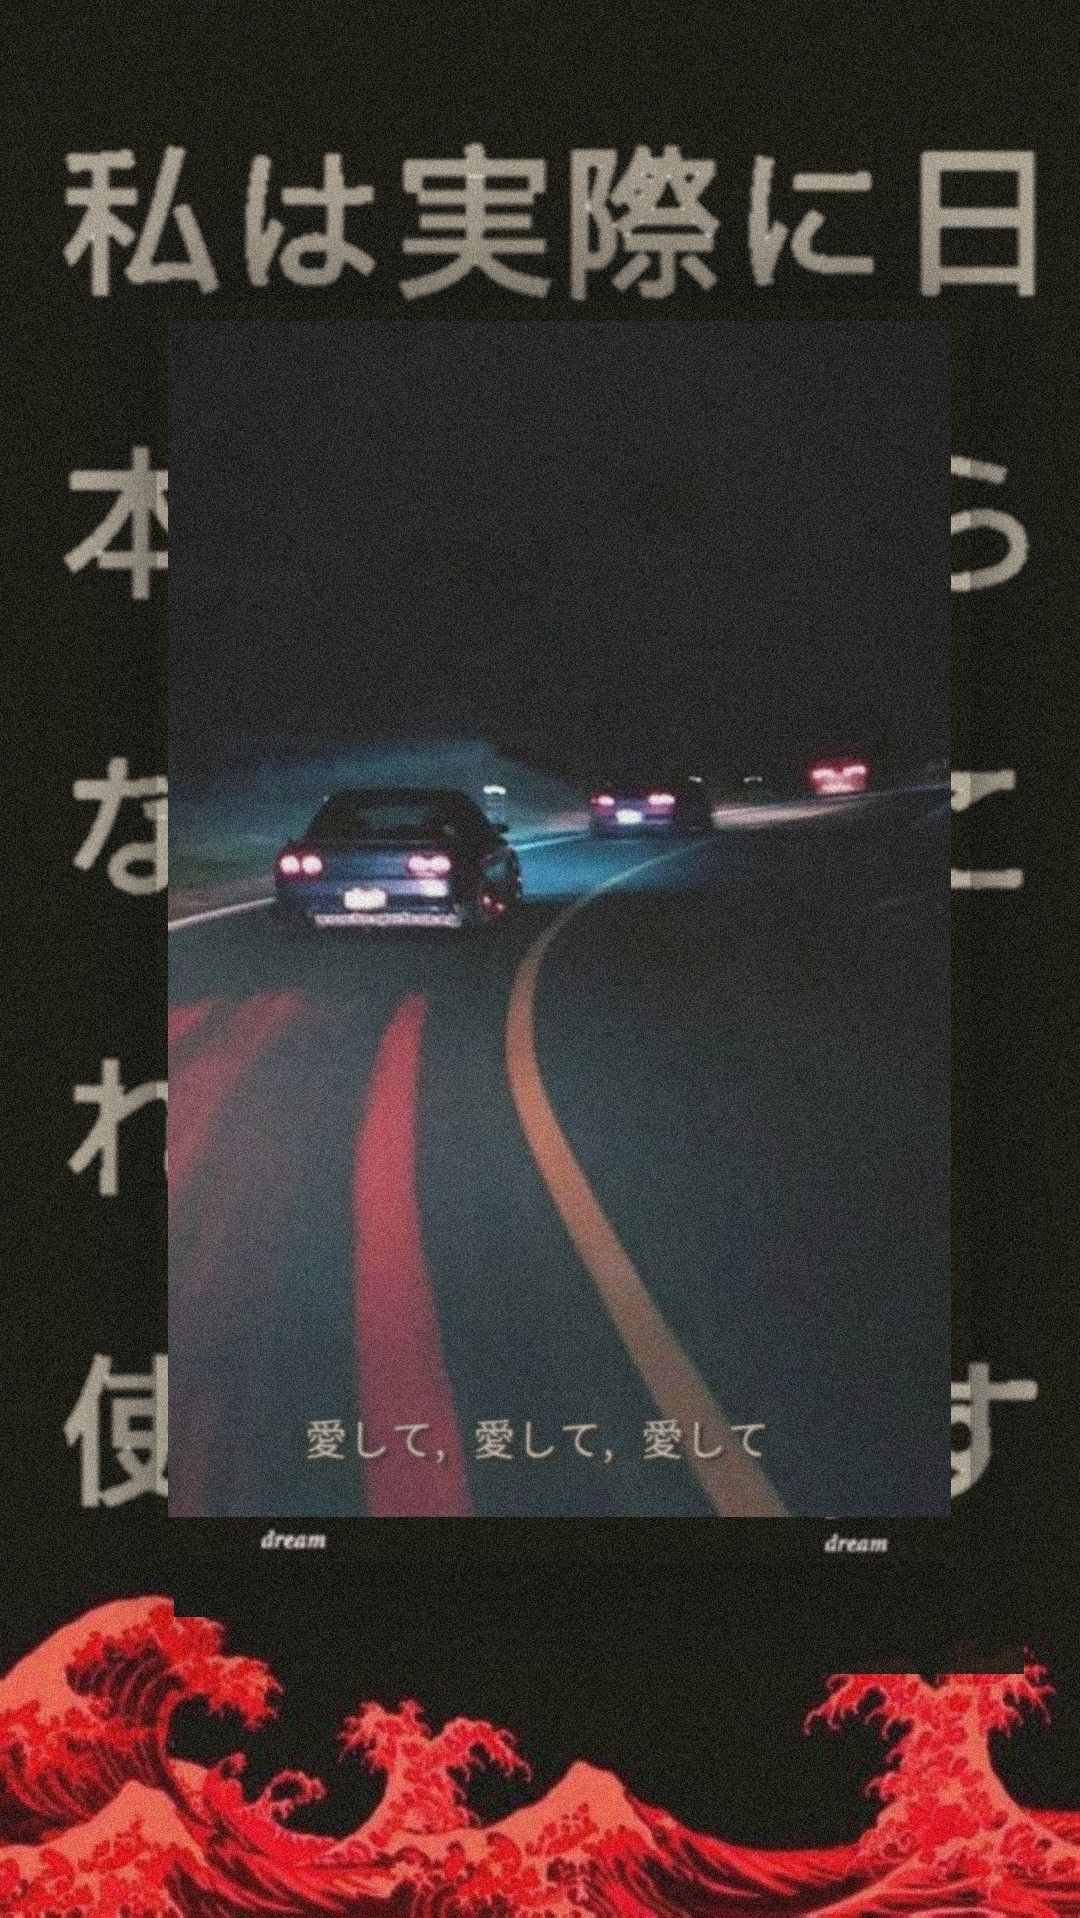 Drift(VHS). Japanese wallpaper iphone, iPhone wallpaper hipster, Wallpaper iphone neon